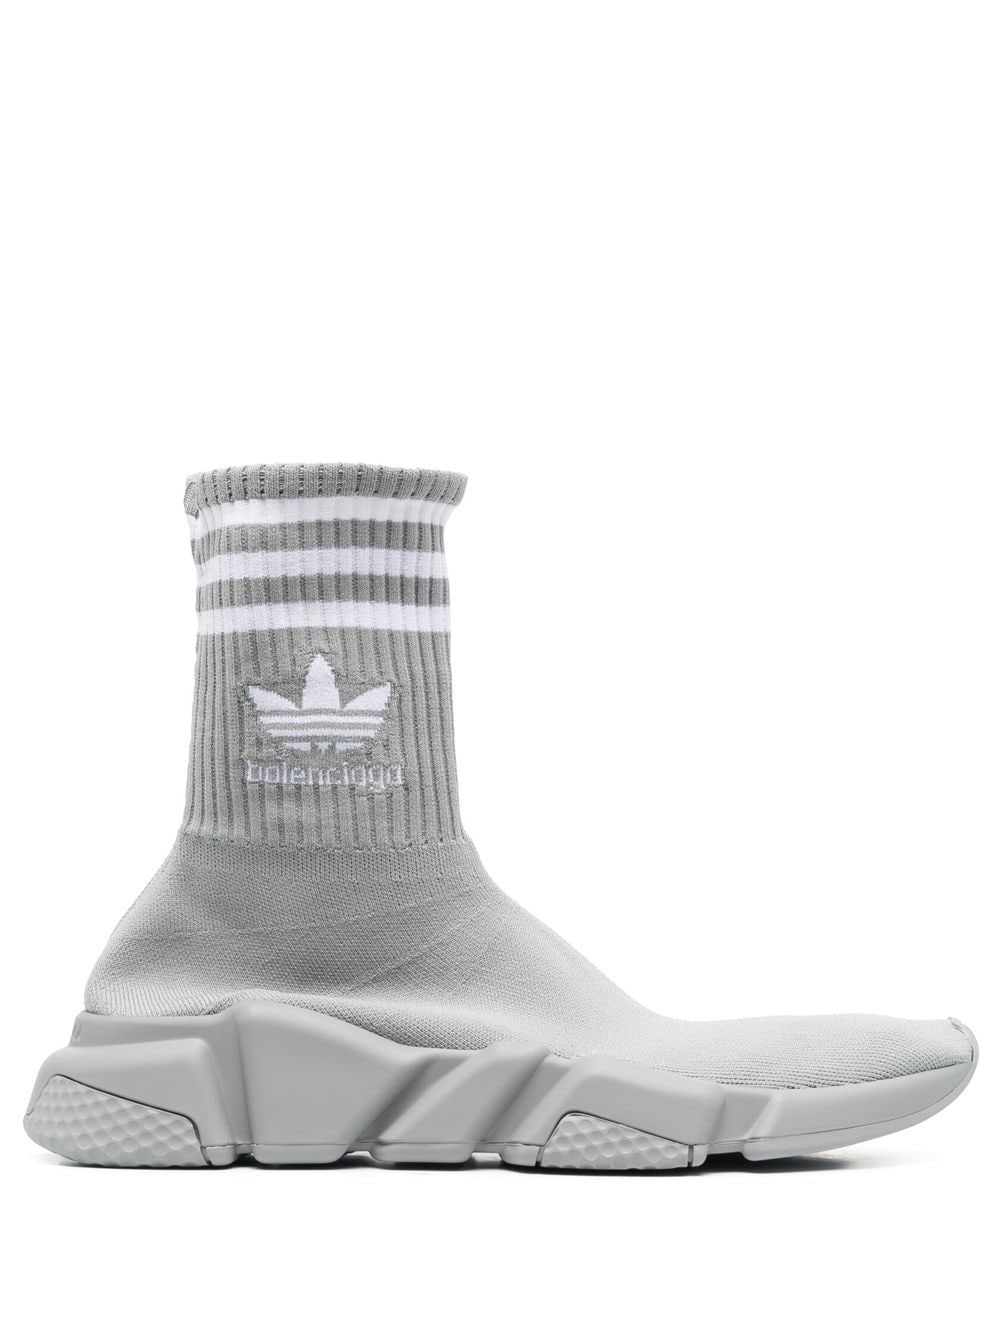 Balenciaga x Adidas Speed sock-style sneakers - Grey von Balenciaga